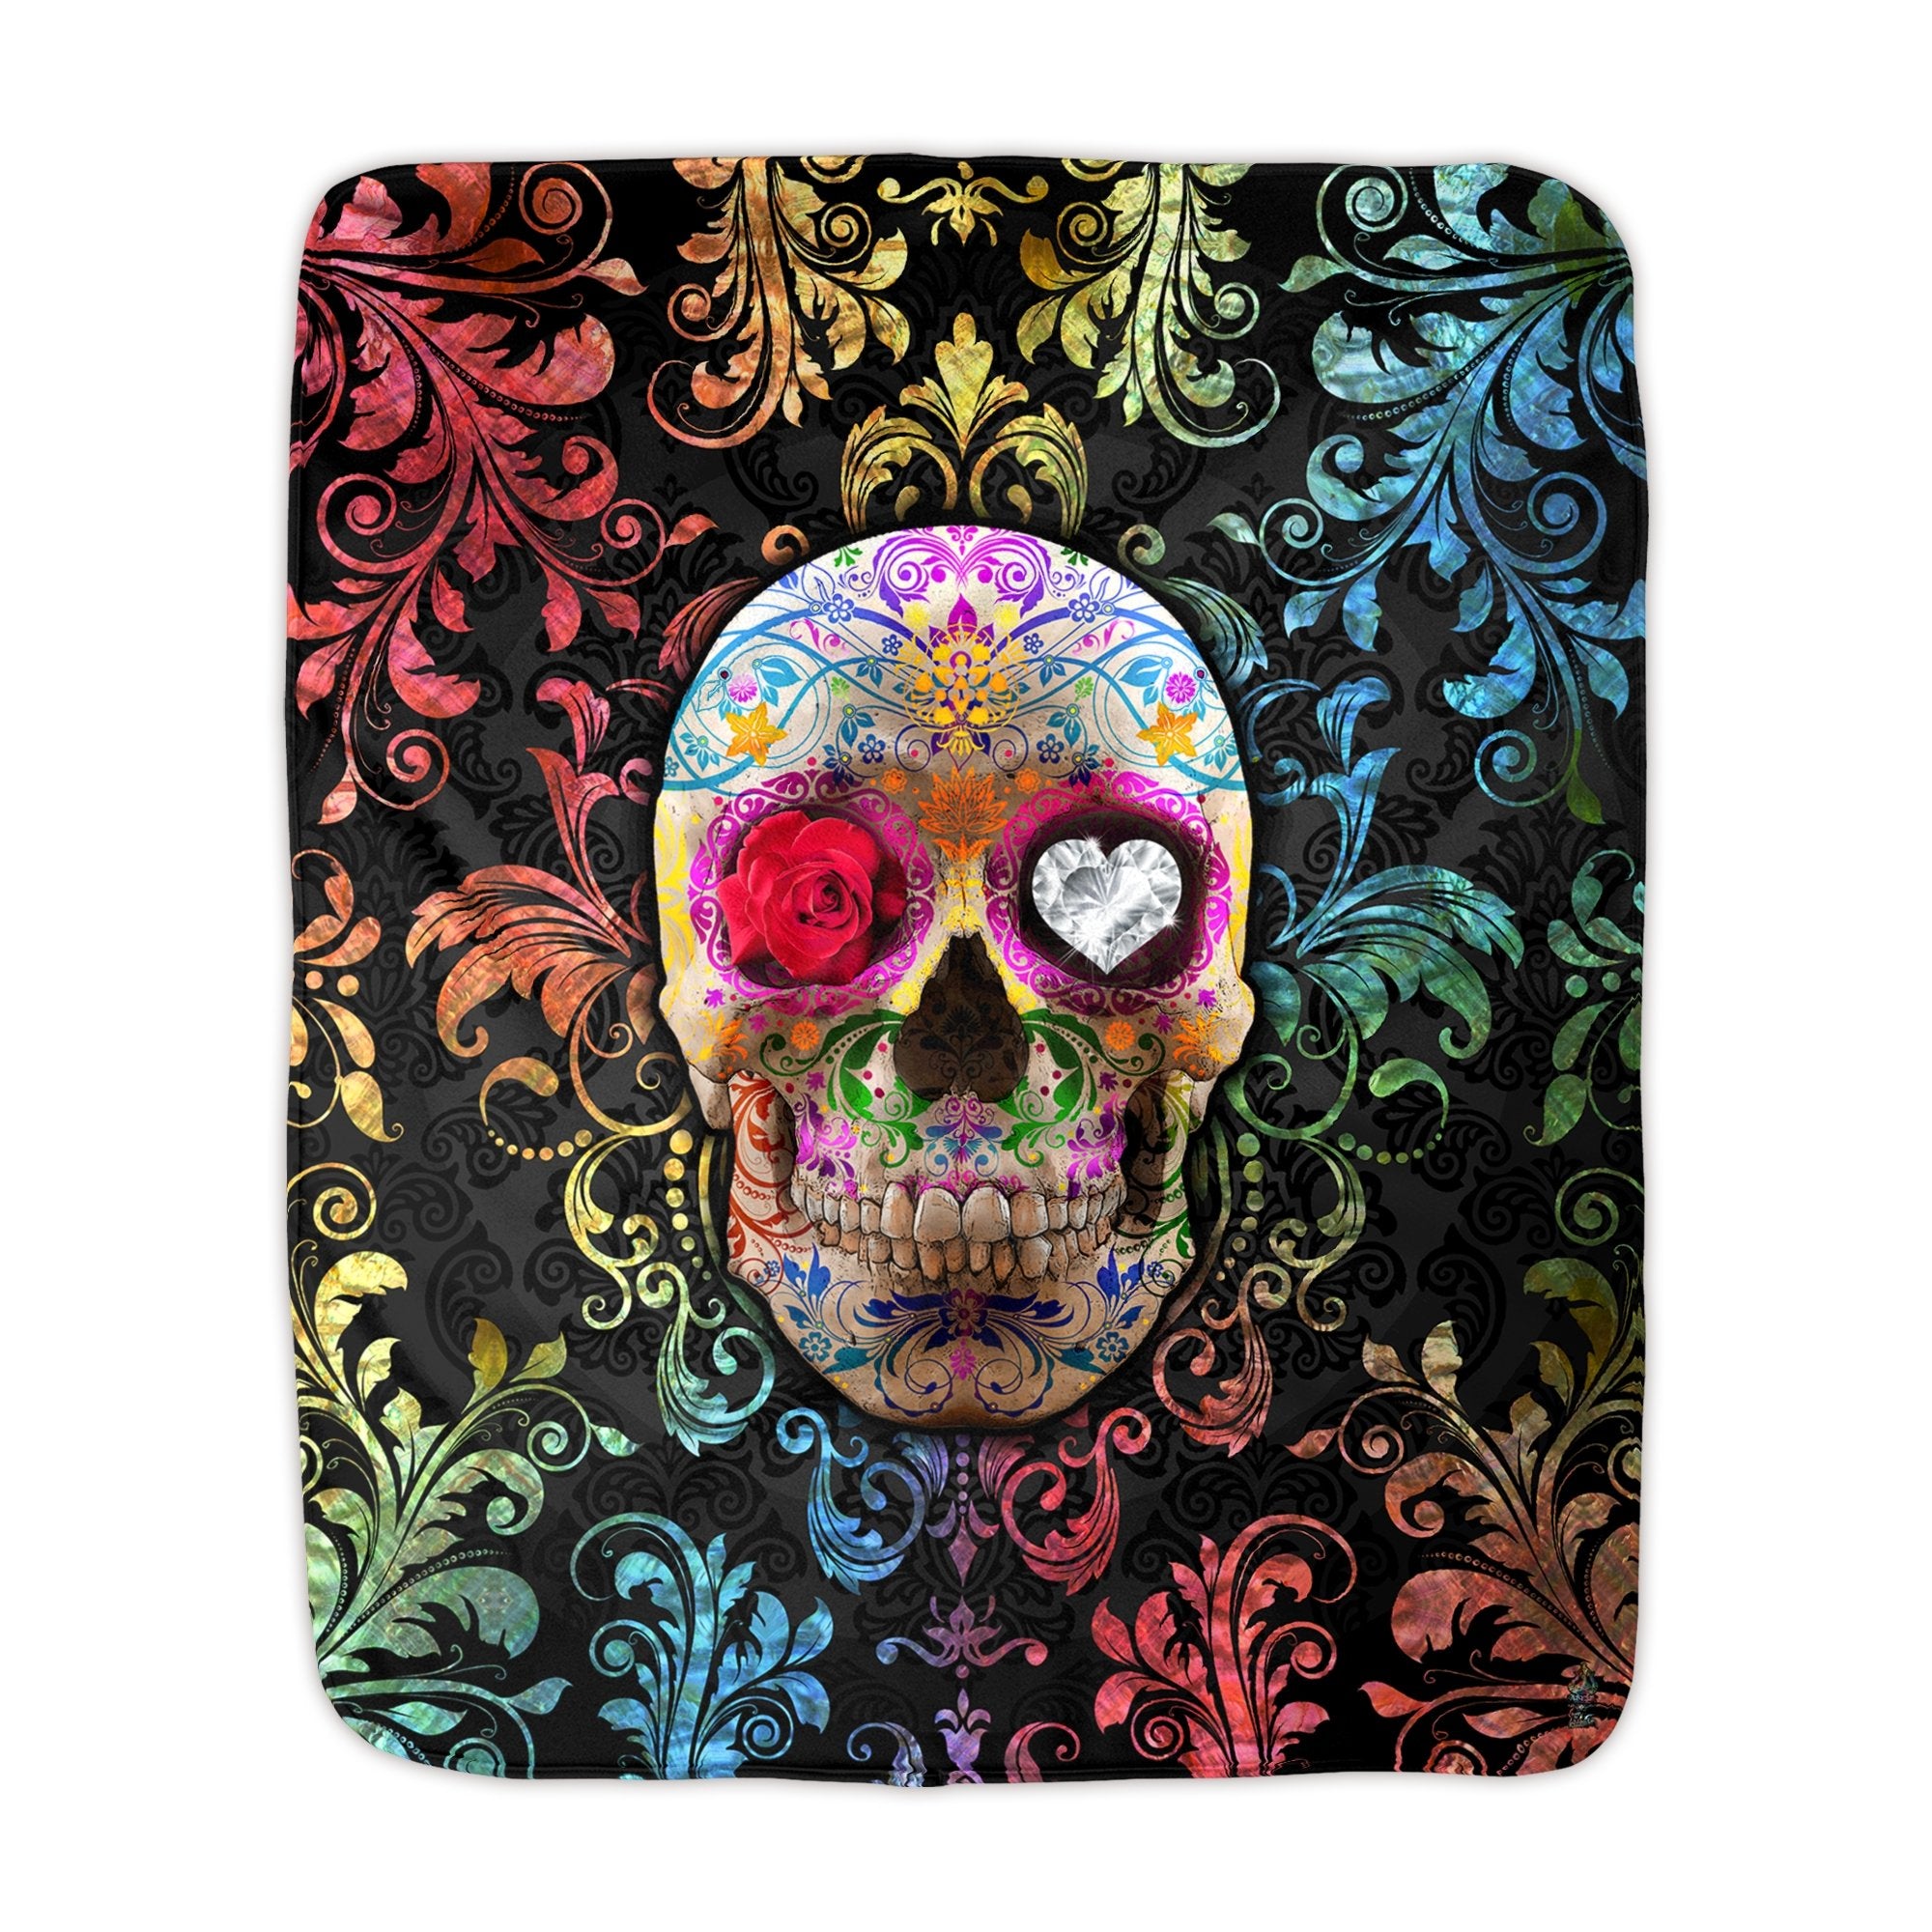 Sugar Skull Throw Fleece Blanket, Macabre Art, Alternative Home Decor - Dia de los Muertos, Day of the Dead - Abysm Internal